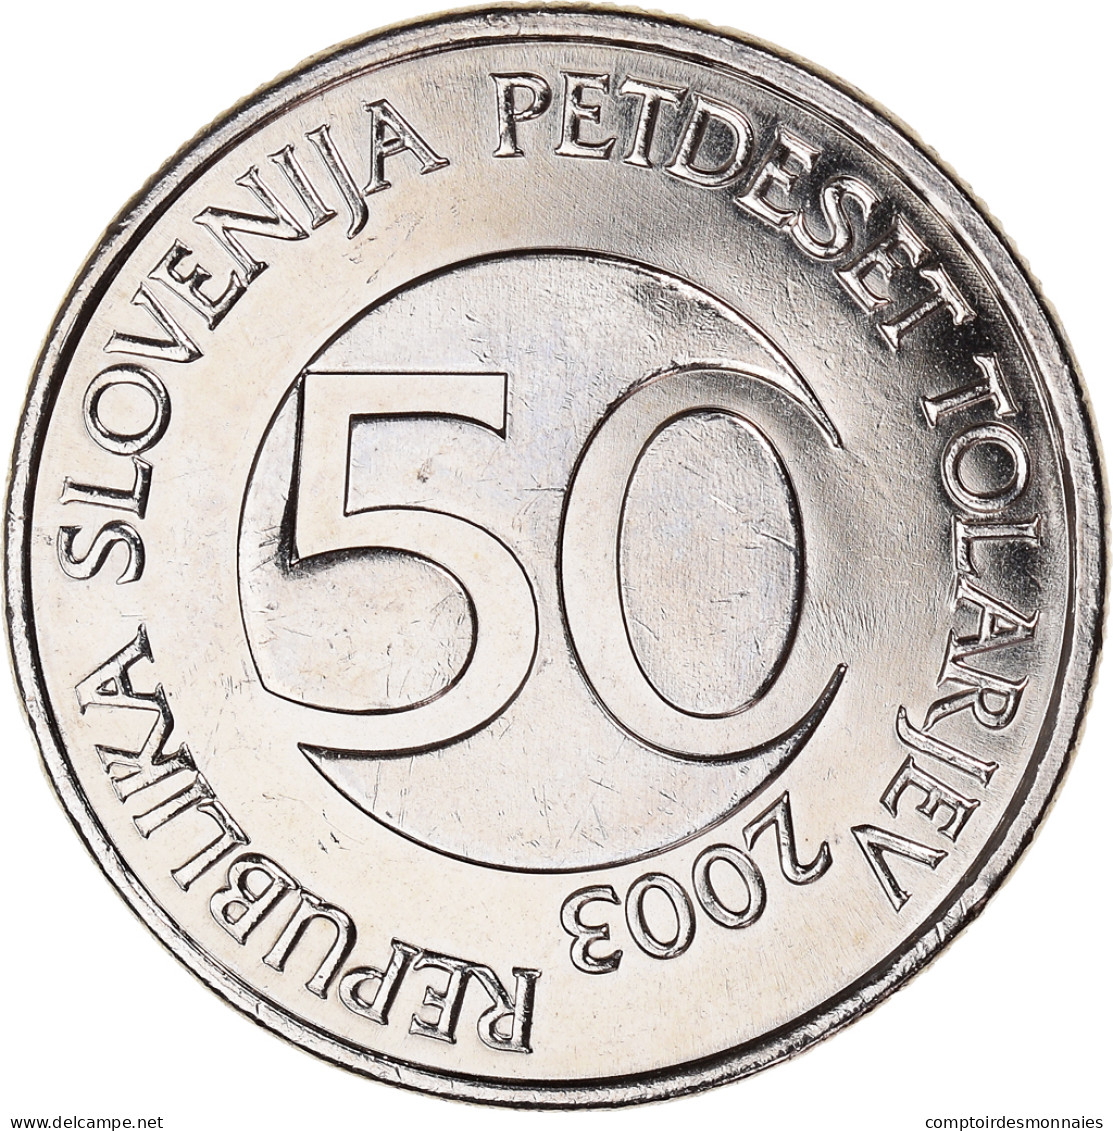 Monnaie, Slovénie, 50 Tolarjev, 2003, Kremnica, SUP, Cupro-nickel, KM:52 - Slovenia